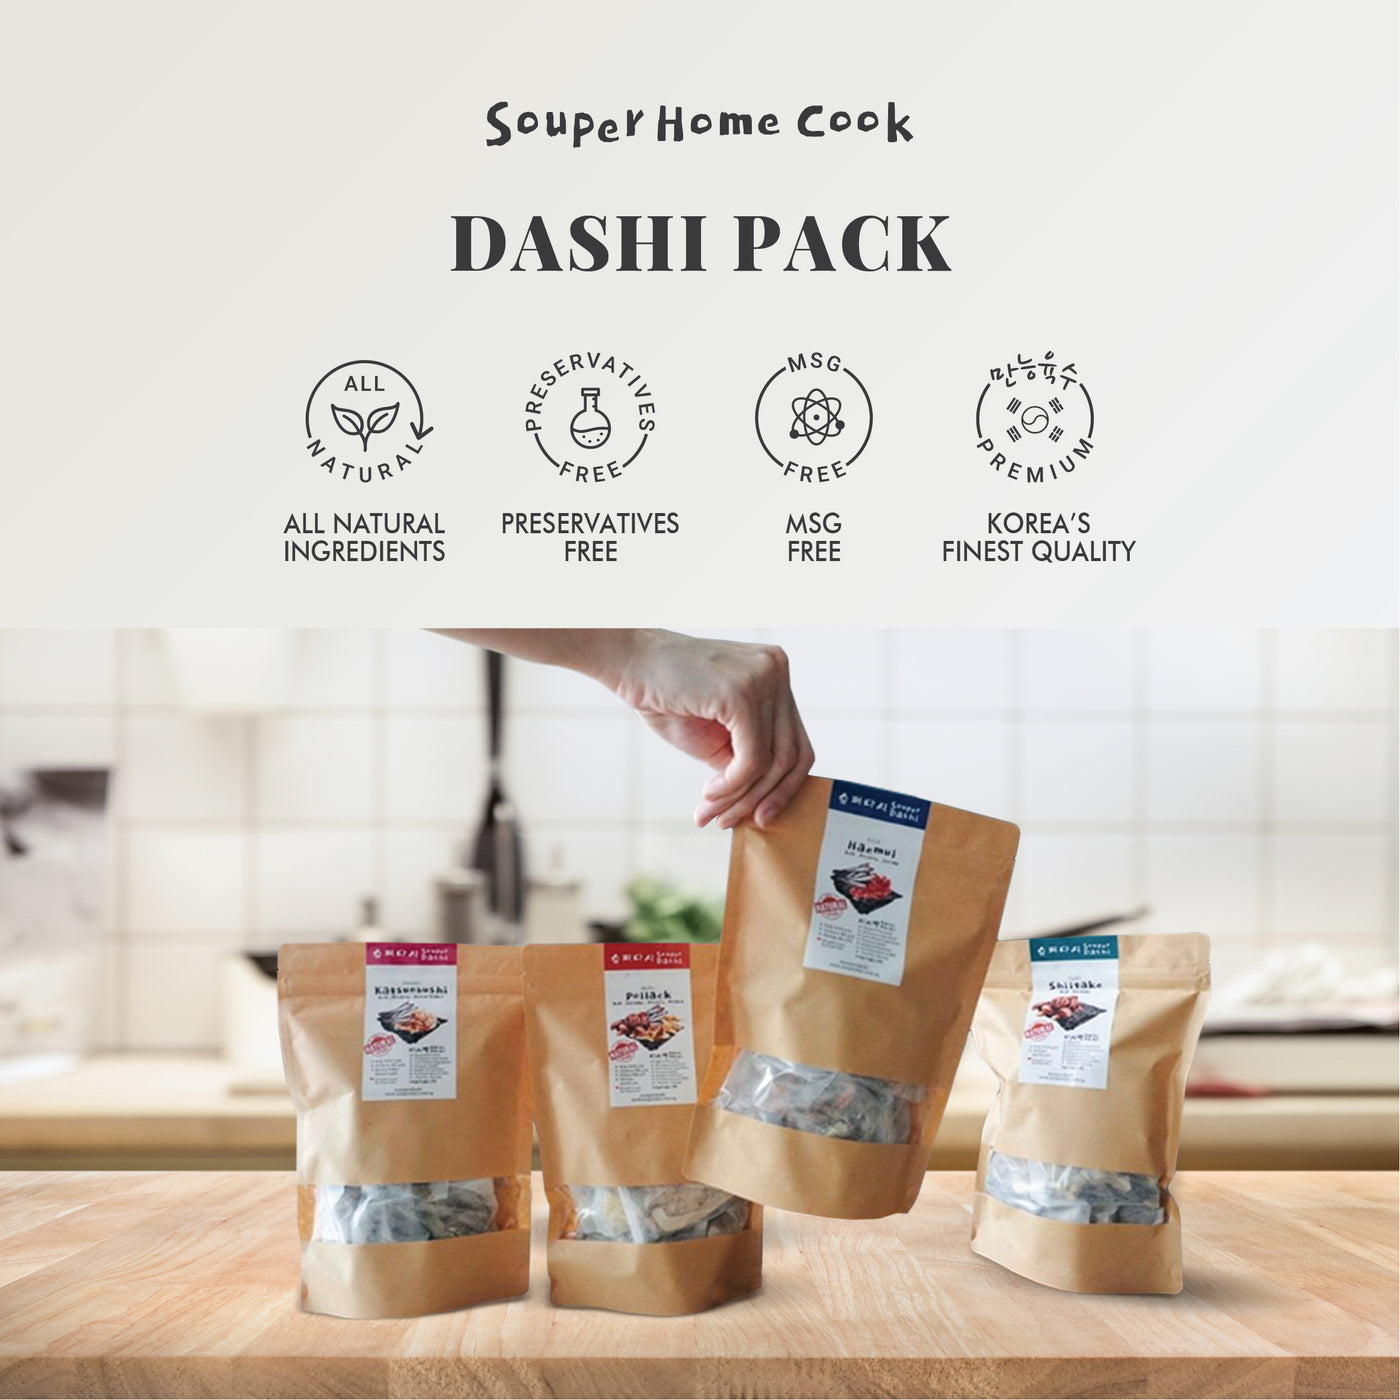 dashi-packet-singapore